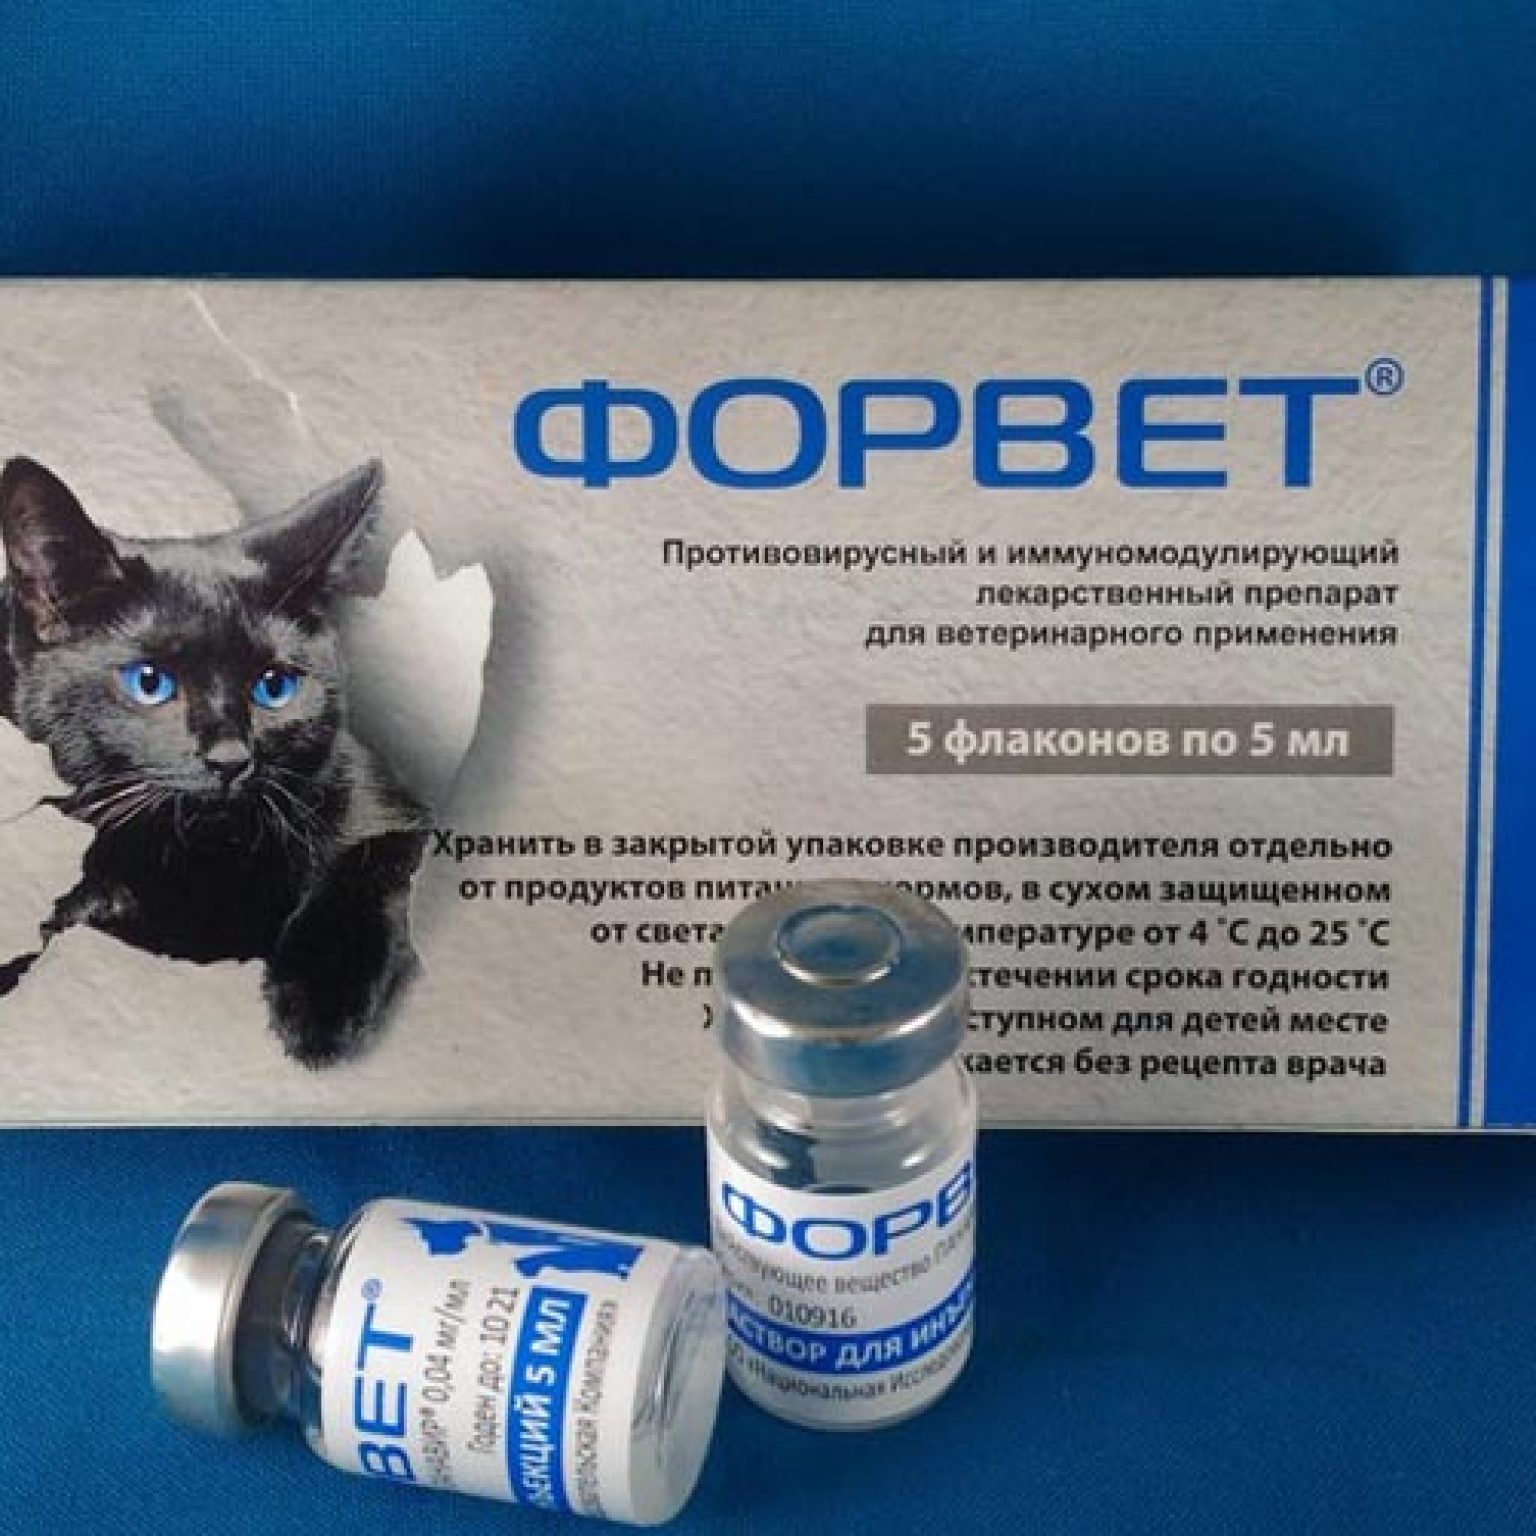 Можно ли кошке обезболивающее. Форвет для кошек. Лекарственные средства для животных. Форвет инъекции. Противовирусные препараты для кошек.